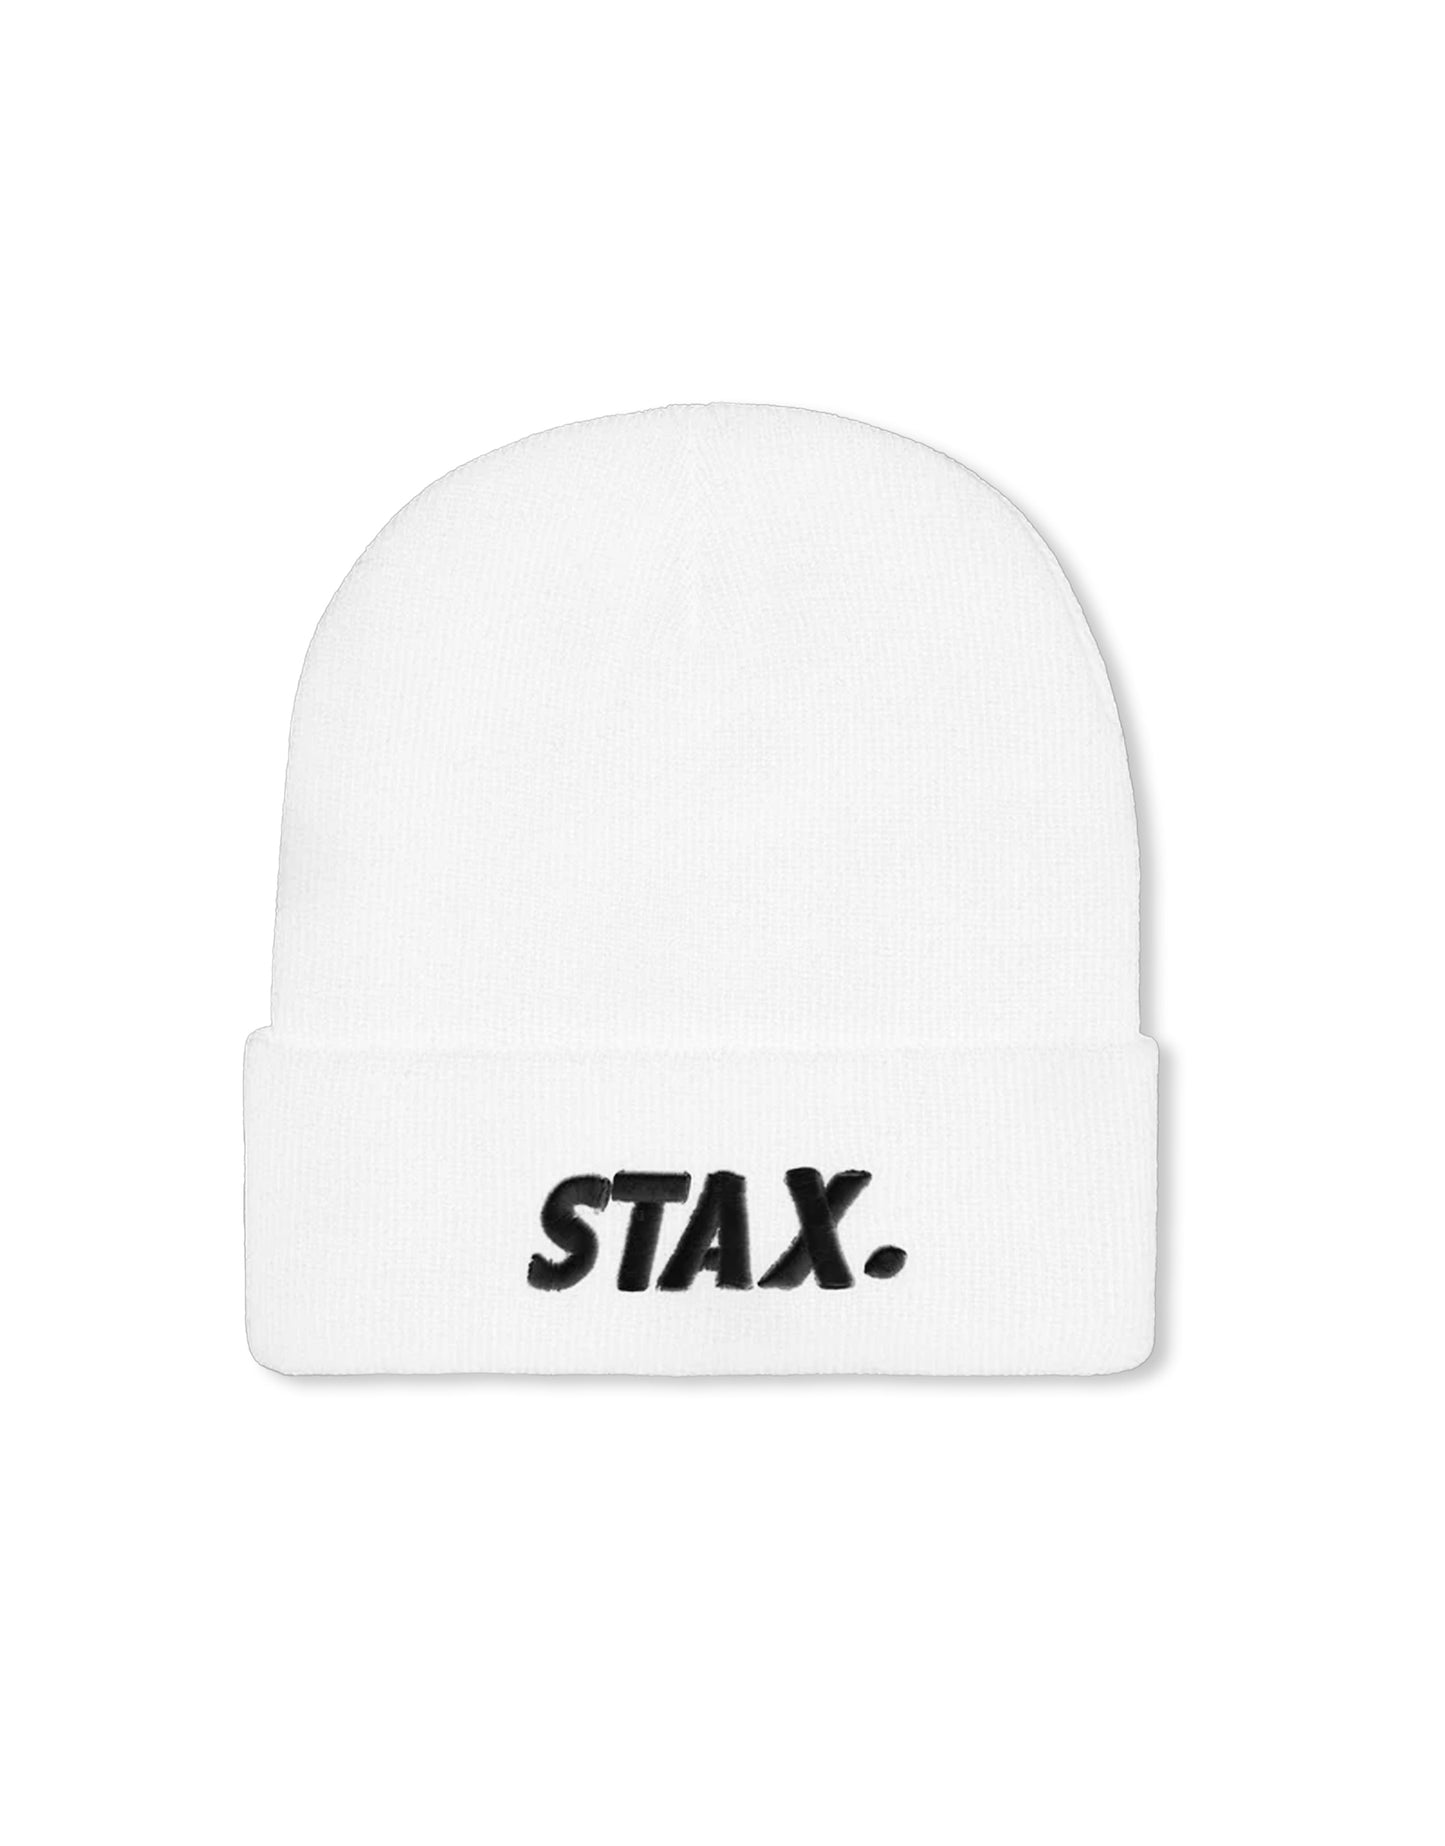 STAX. Unisex Beanie - White